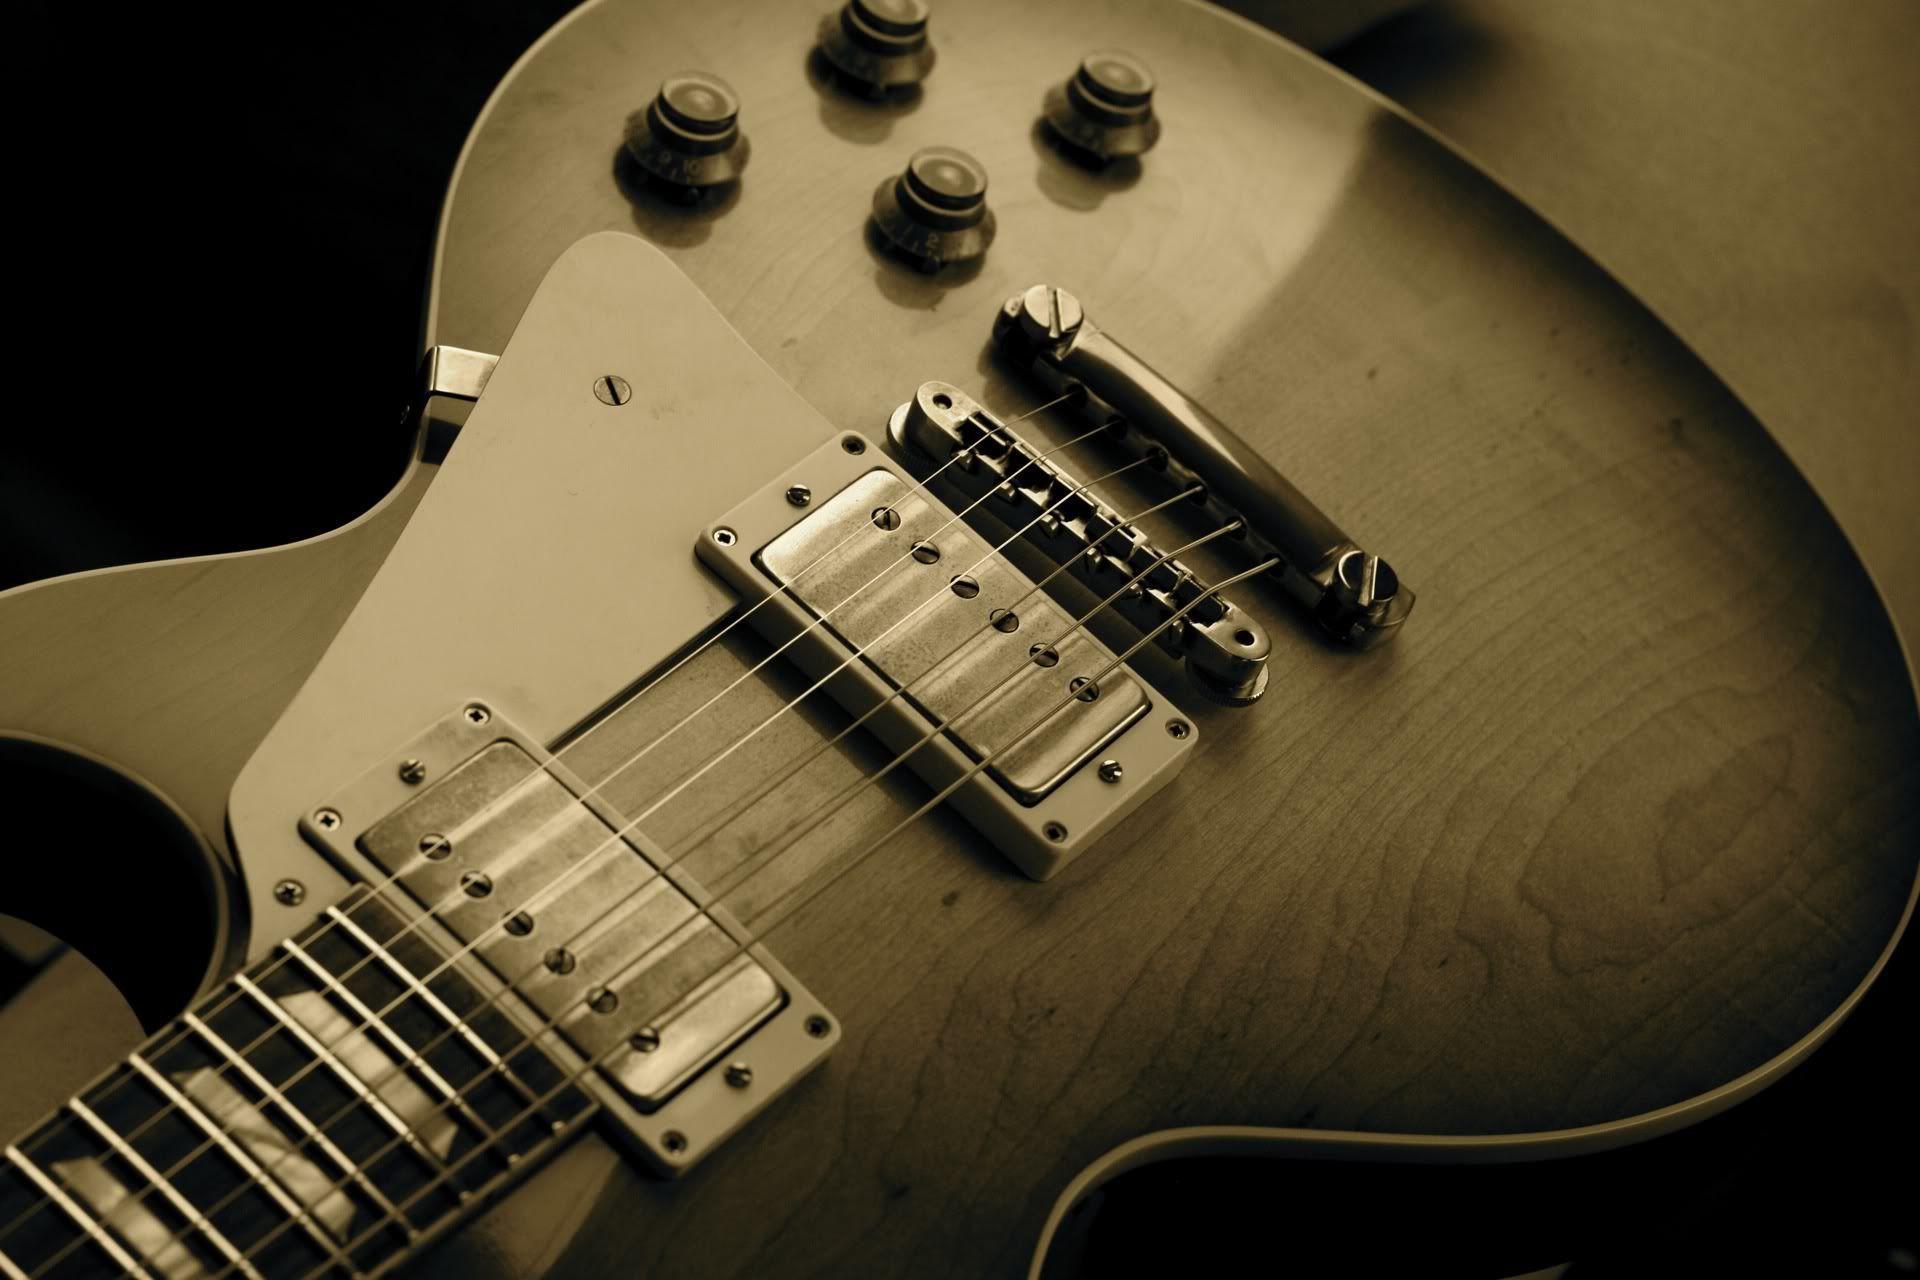 Guitar Gibson Les Paul Wallpaper. High Definition Wallpaper